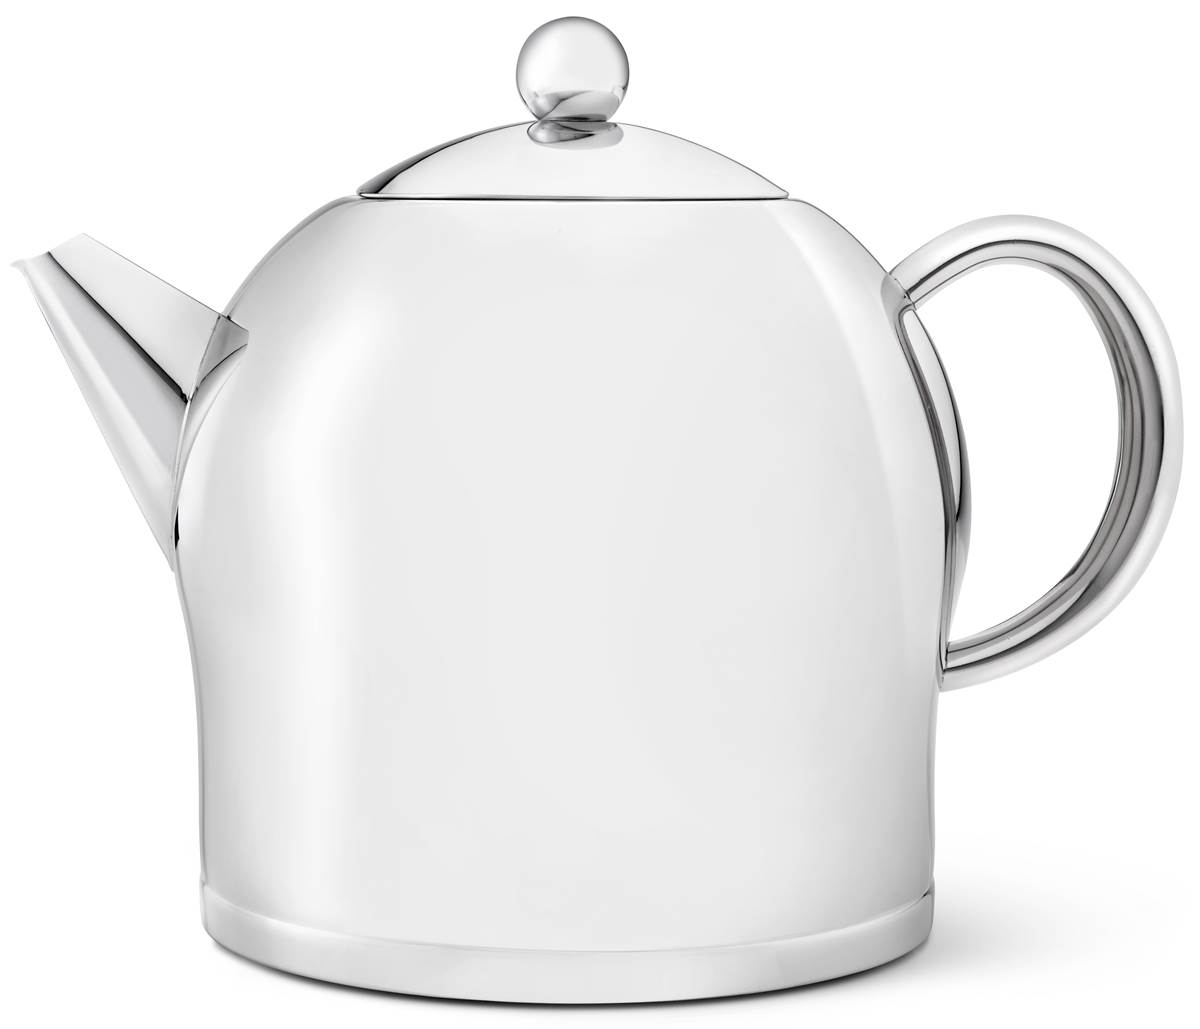 große Liter 2.0 Bredemeijer | MM-ComSale Edelstahl doppelwandige Teekanne